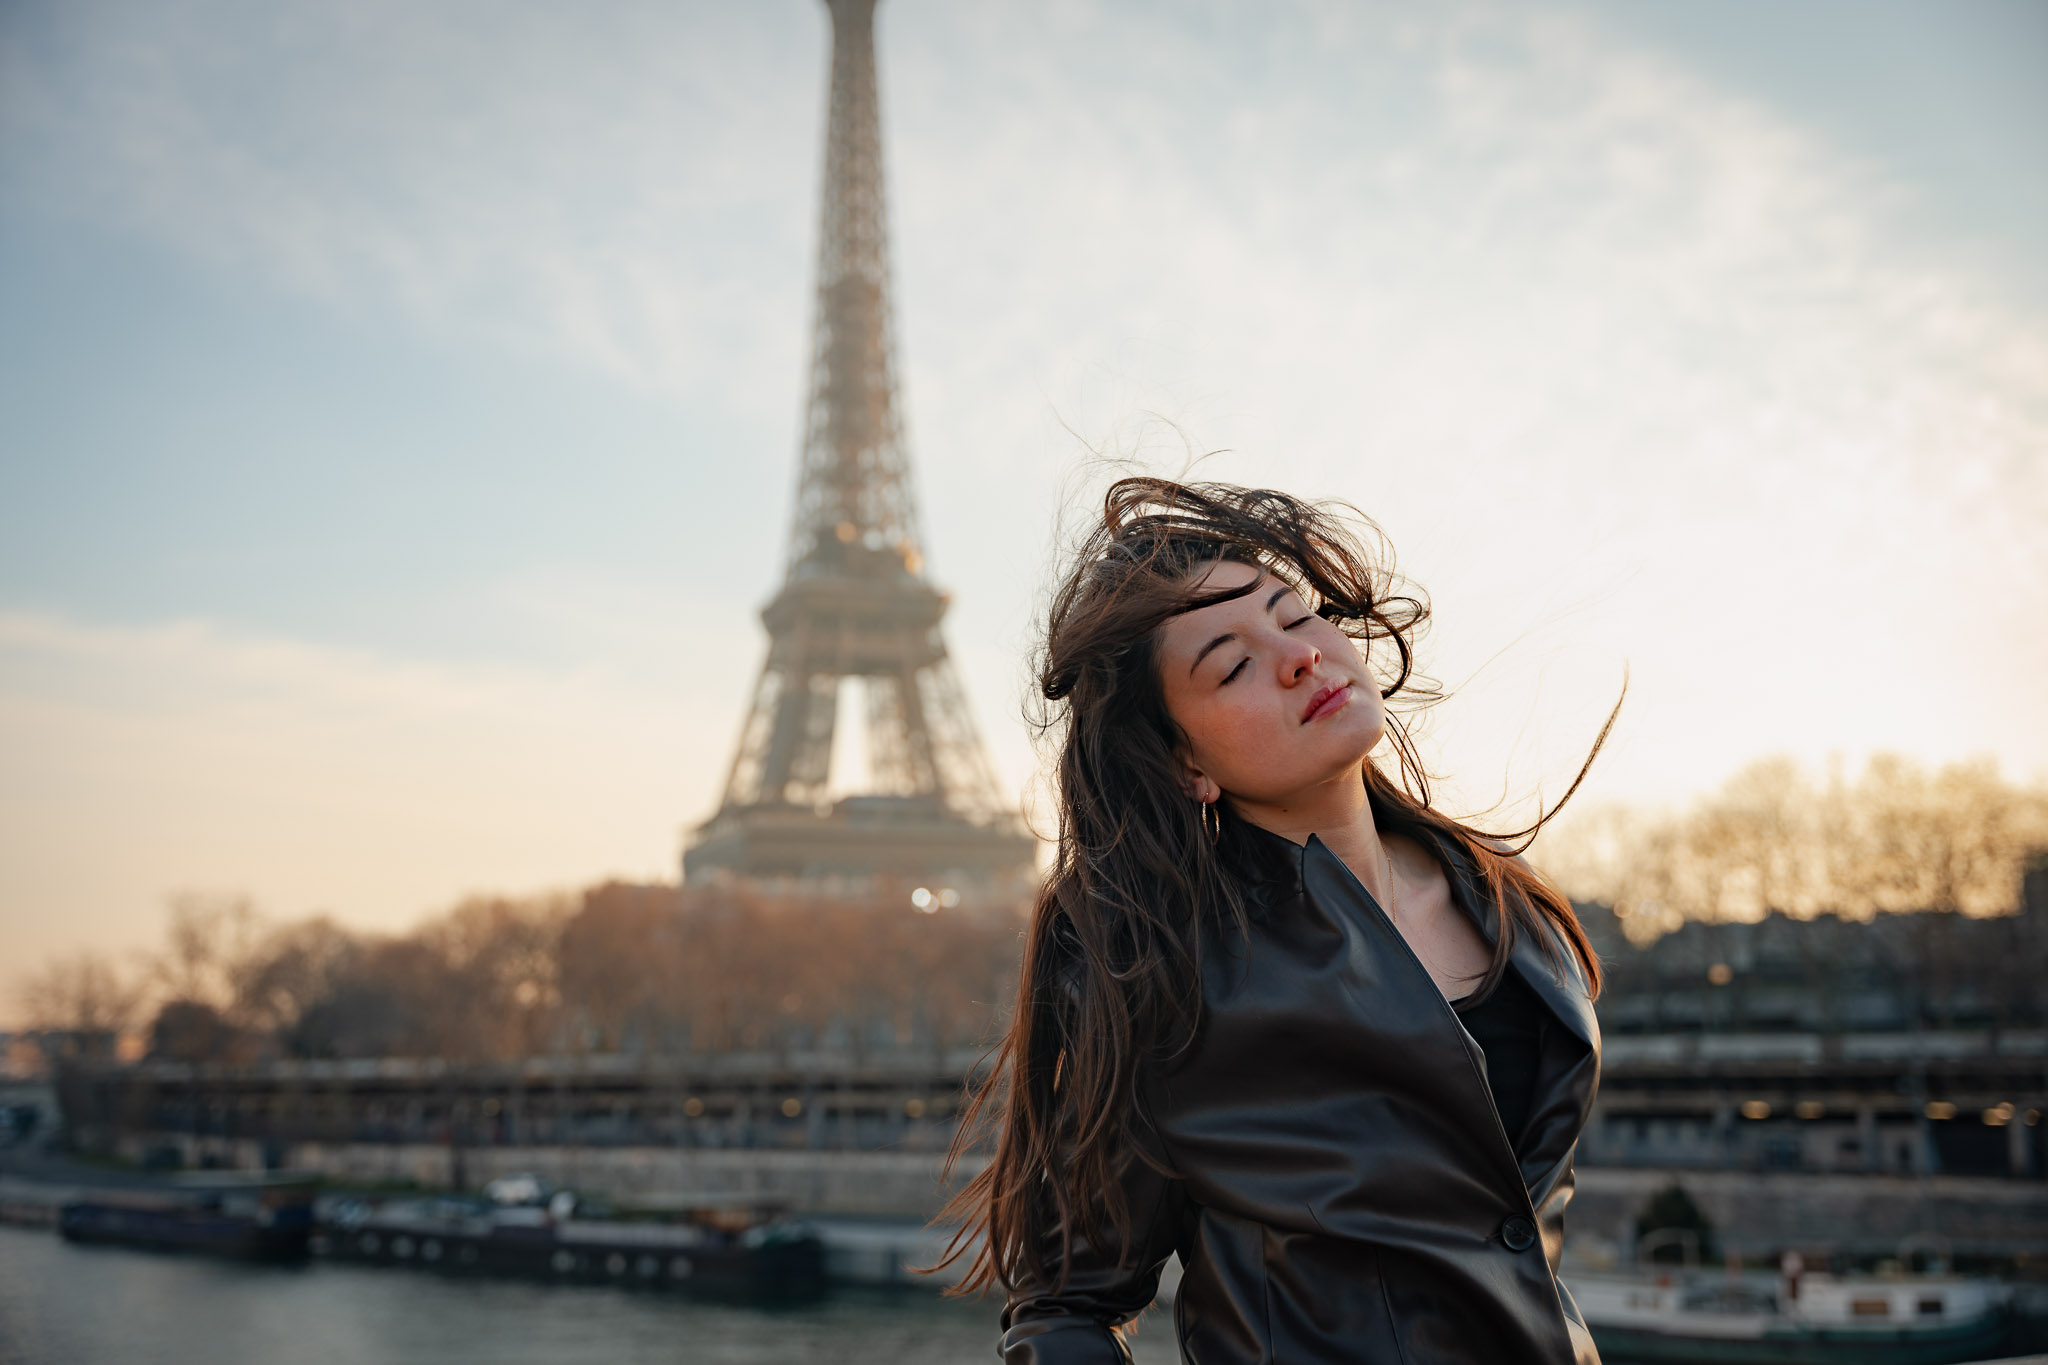 Photographe portrait Paris d'une femme sur le pont de Bir-Hakeim devant la Tour Eiffel à Paris